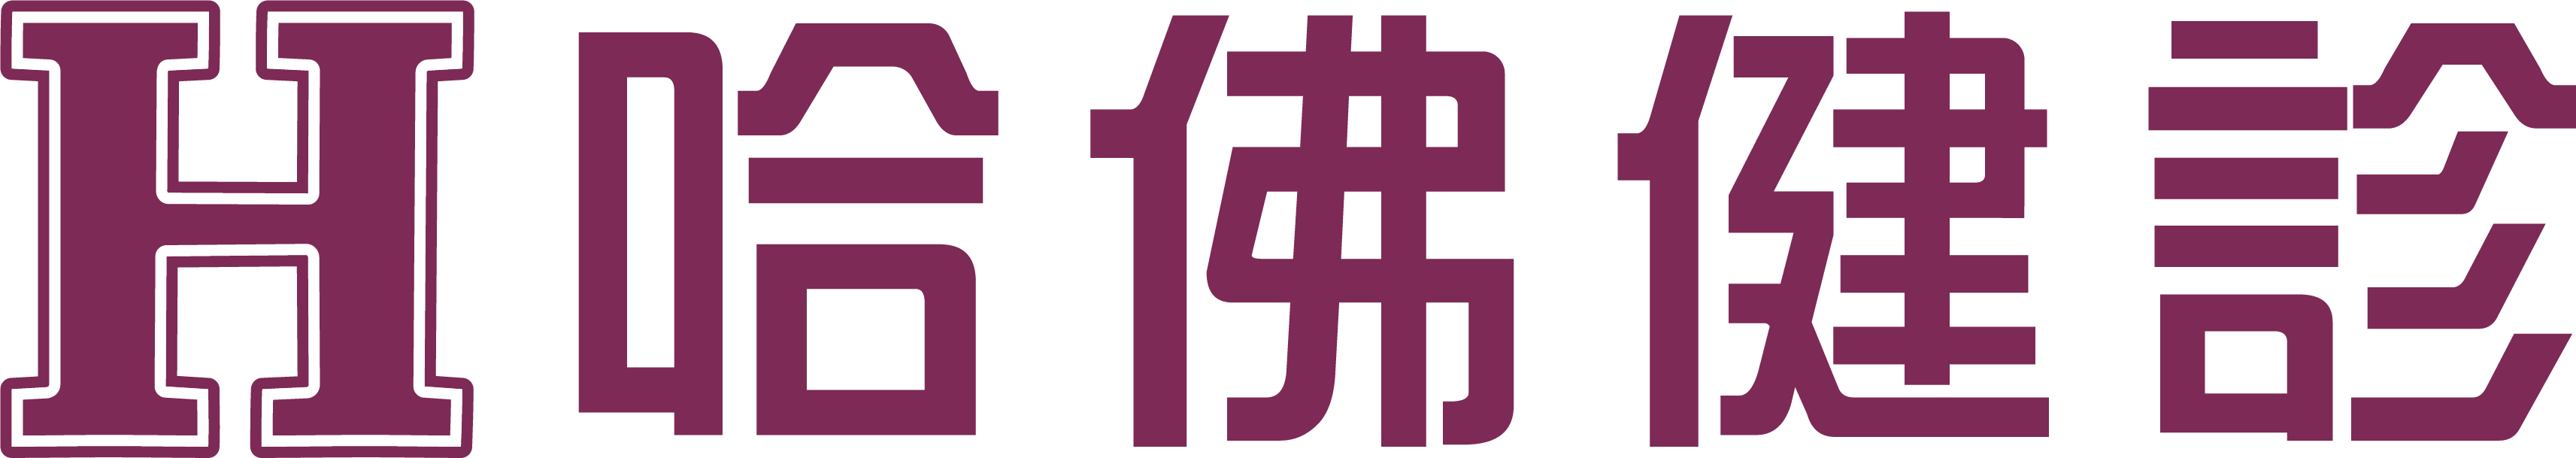 哈佛健診logo_新.png